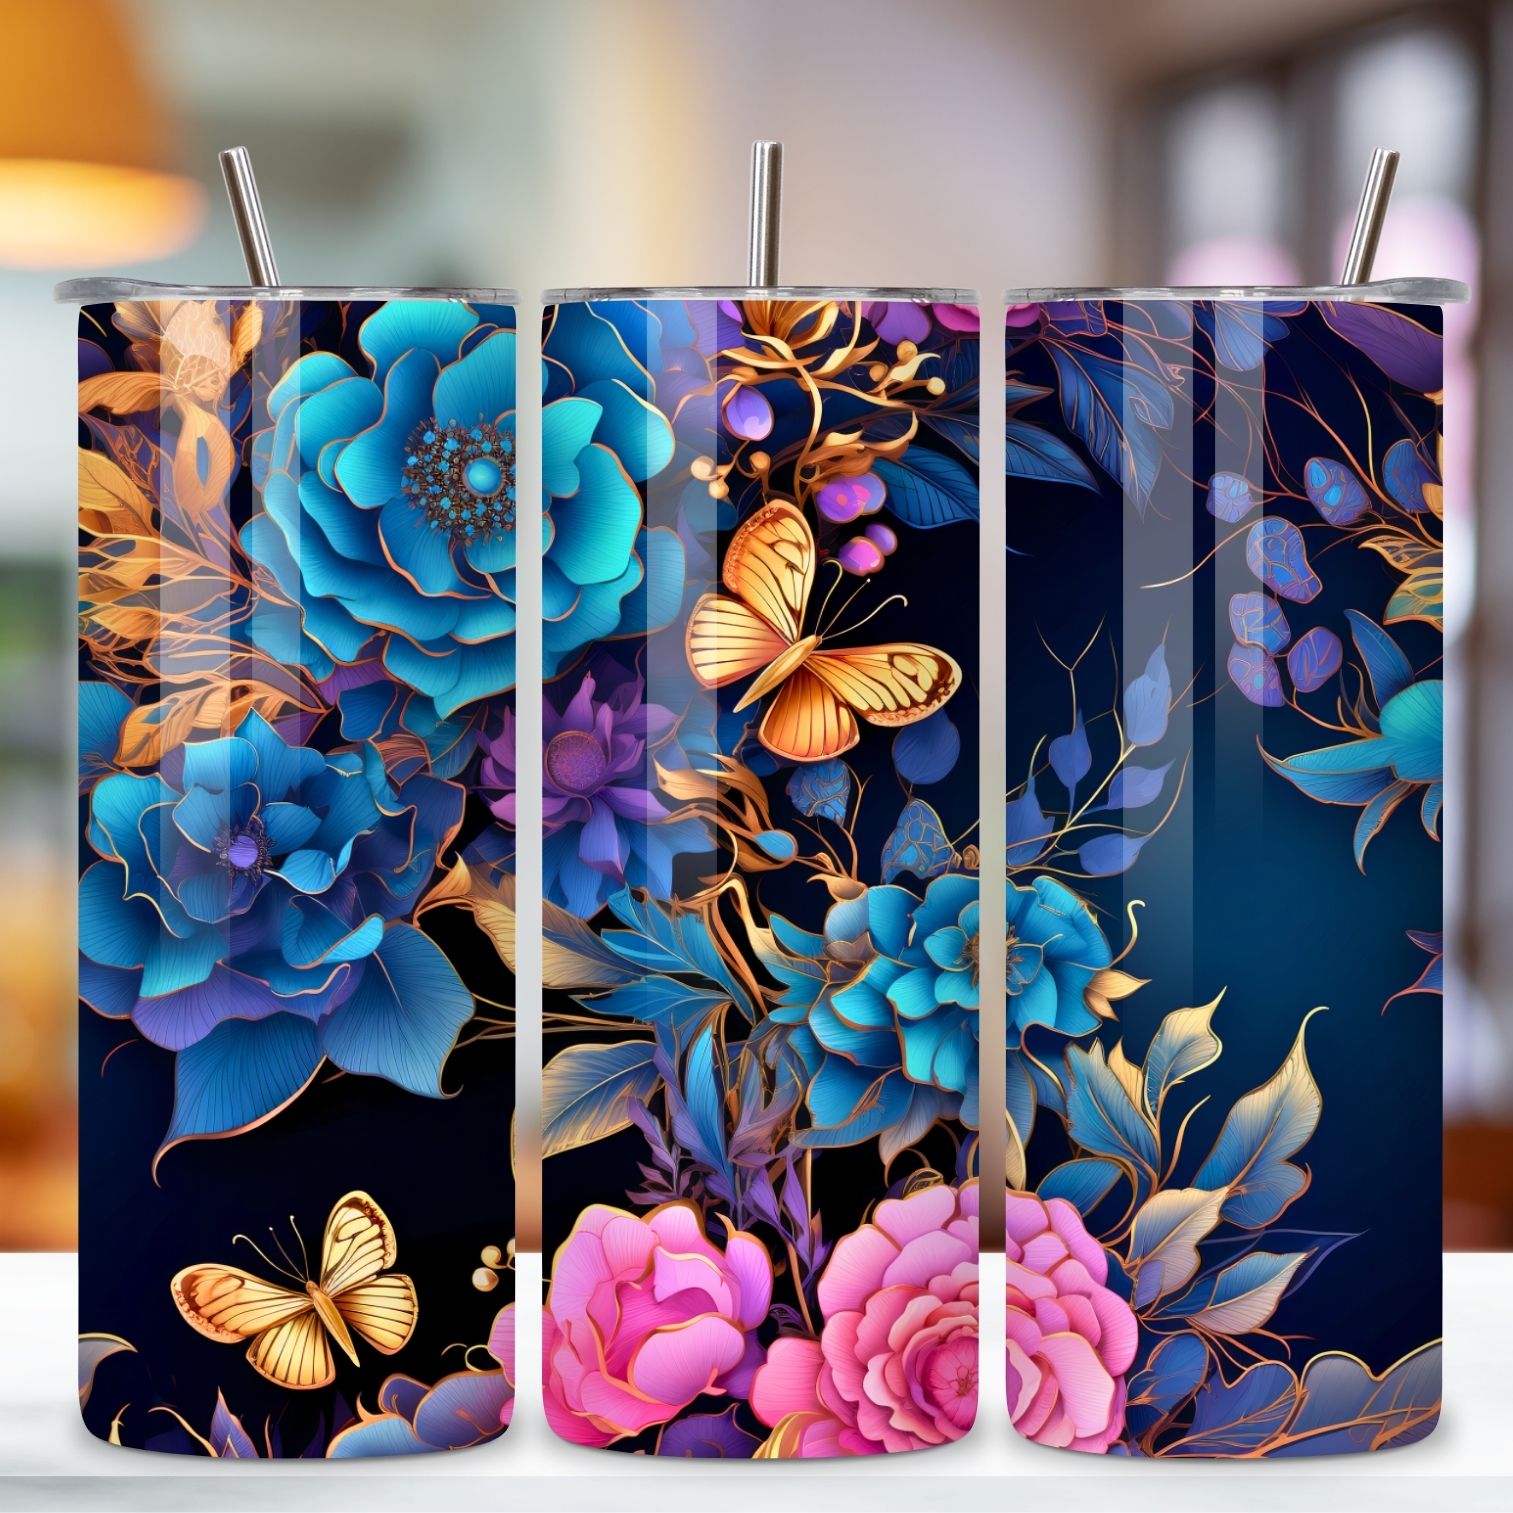 Golden Elegance Tumbler Wrap, alcohol ink butterflies, 3d tumbler wrap, butterfly tumbler, designs popular, elegant tumbler, floral tumbler wrap preview image.